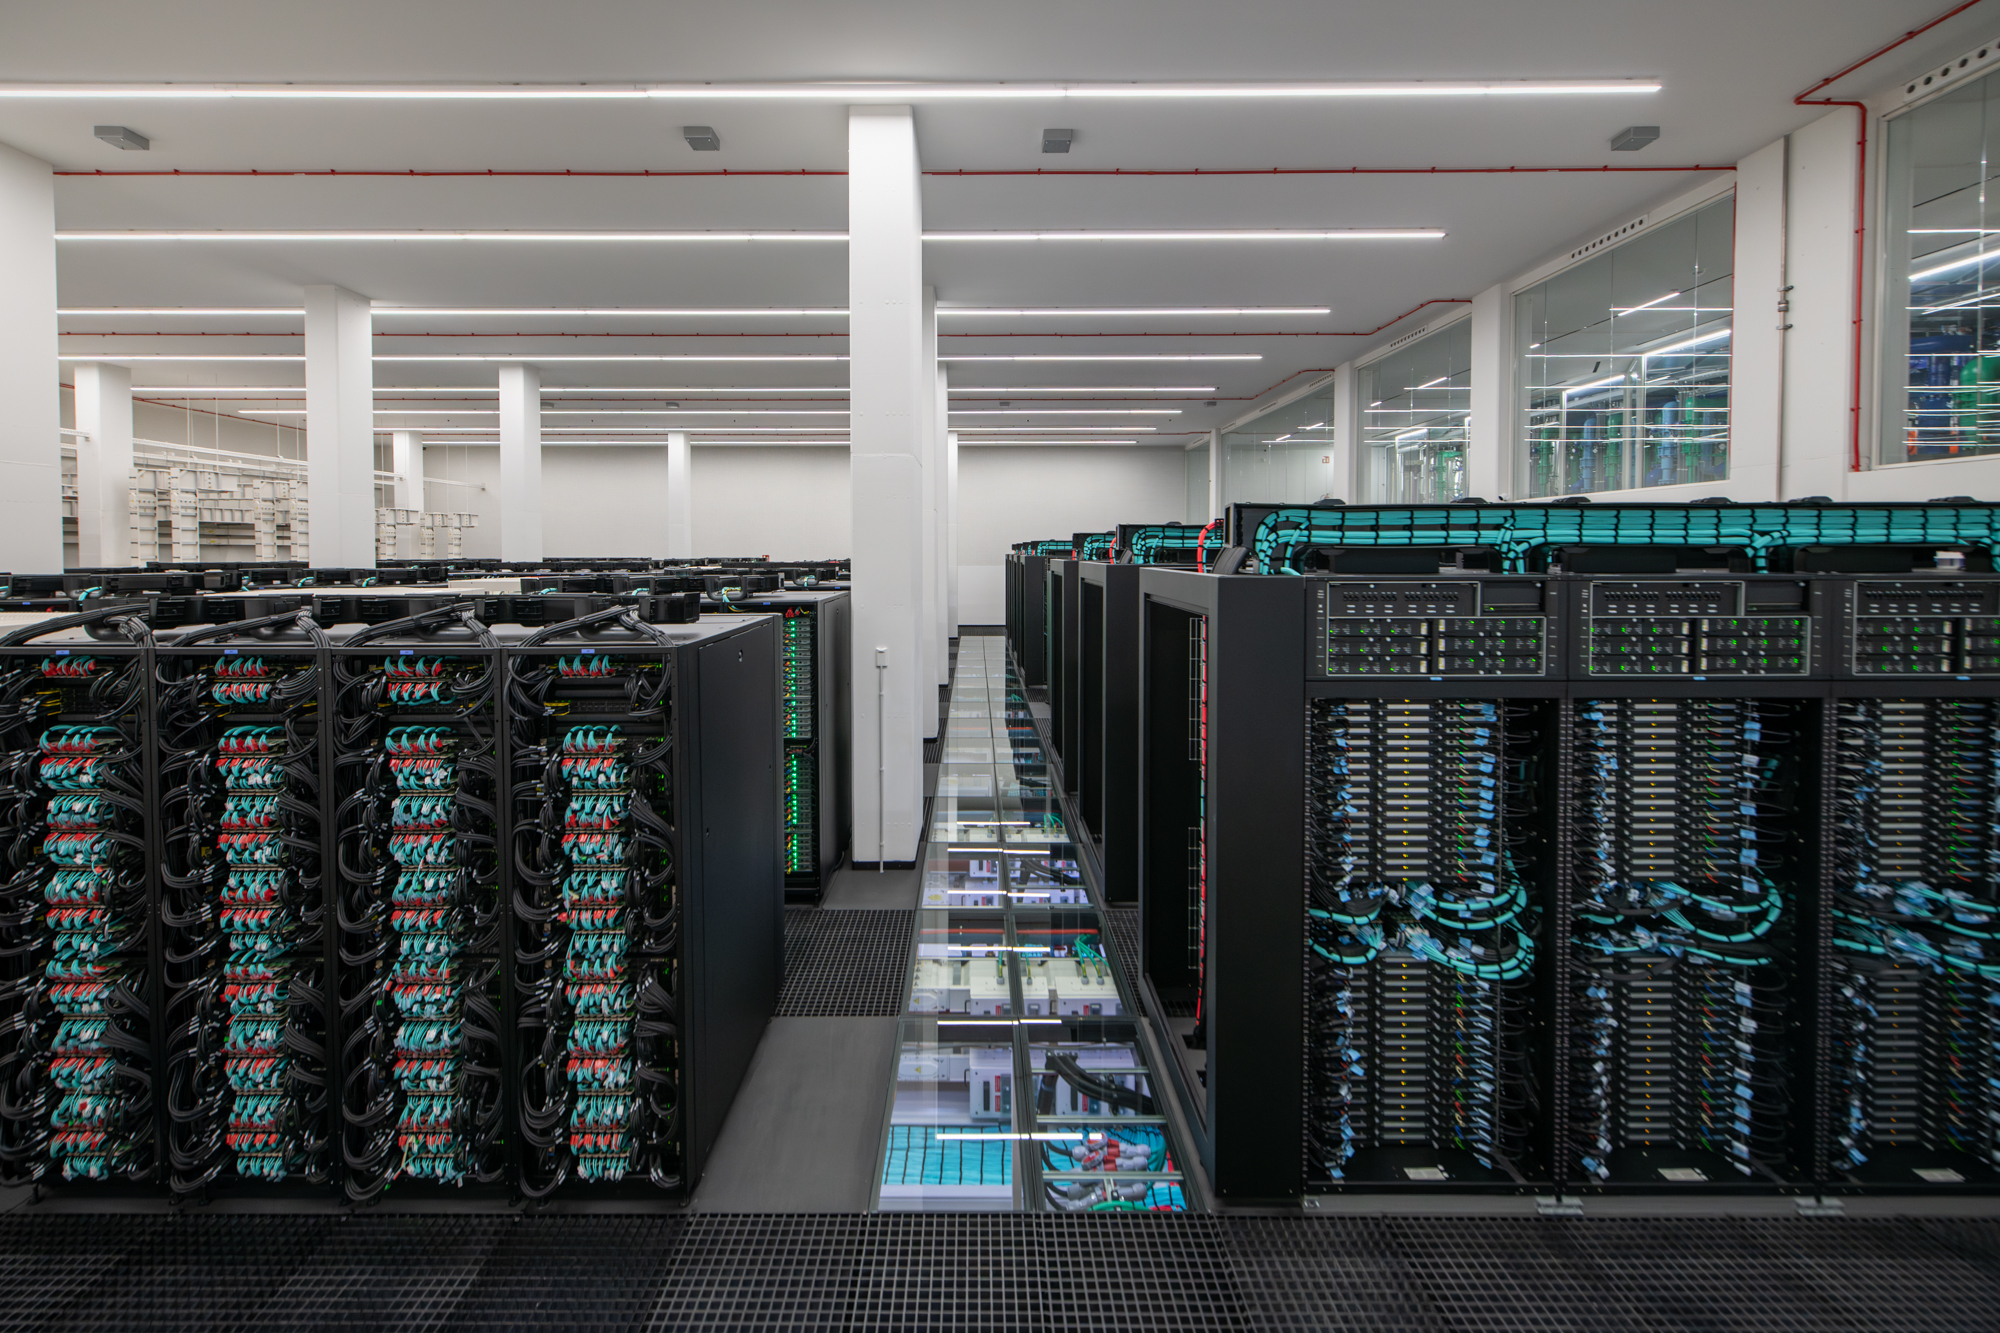 Espanha aumenta poder em IA com atualização do supercomputador MareNostrum 5